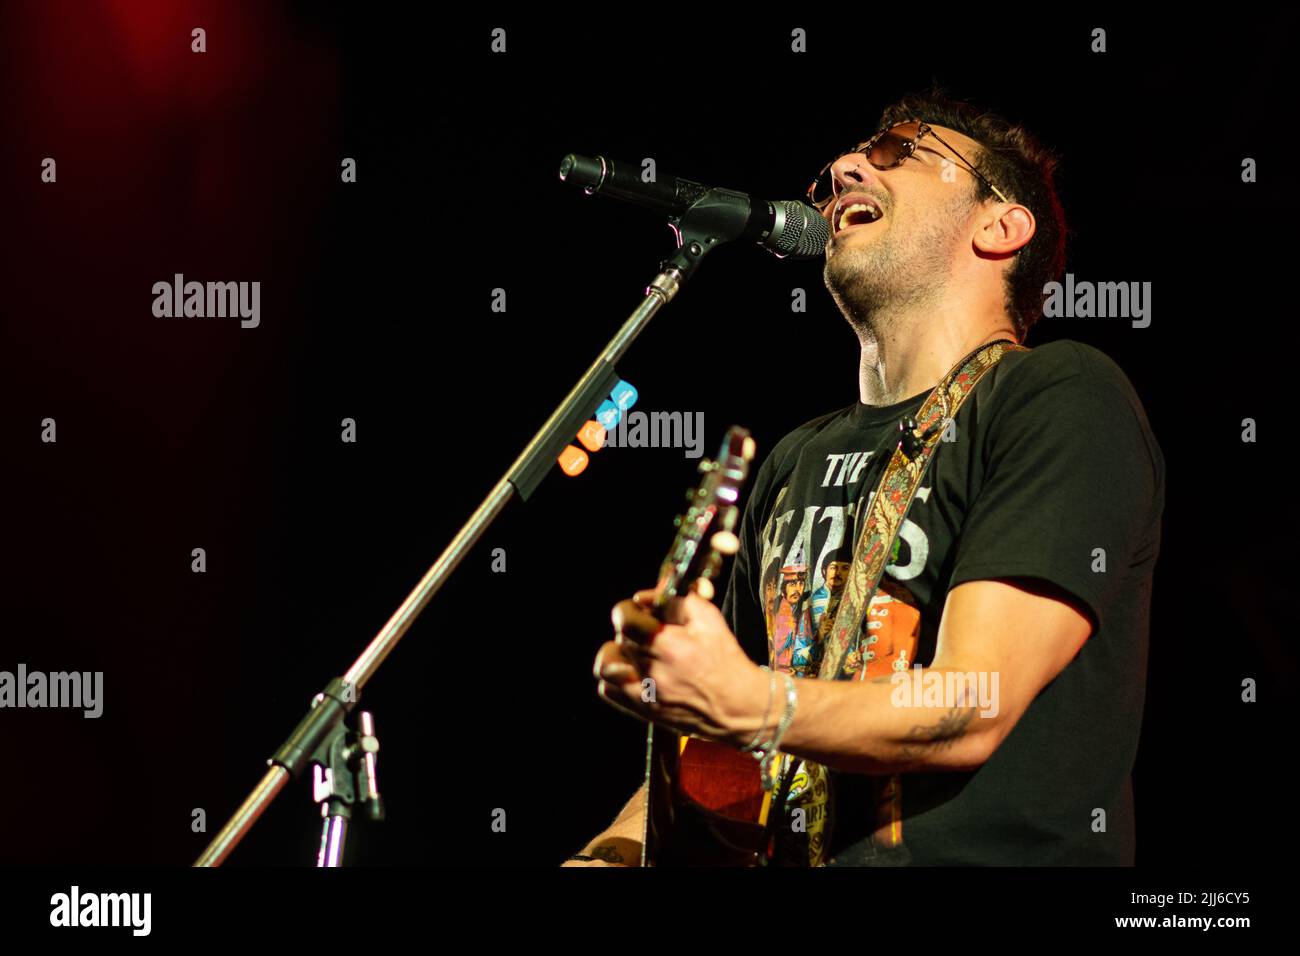 Emiliano Brancciari, No Te VA, Sänger und Frontmann von Gustar, tritt während einer Show in Corrientes, Argentinien, auf. Stockfoto